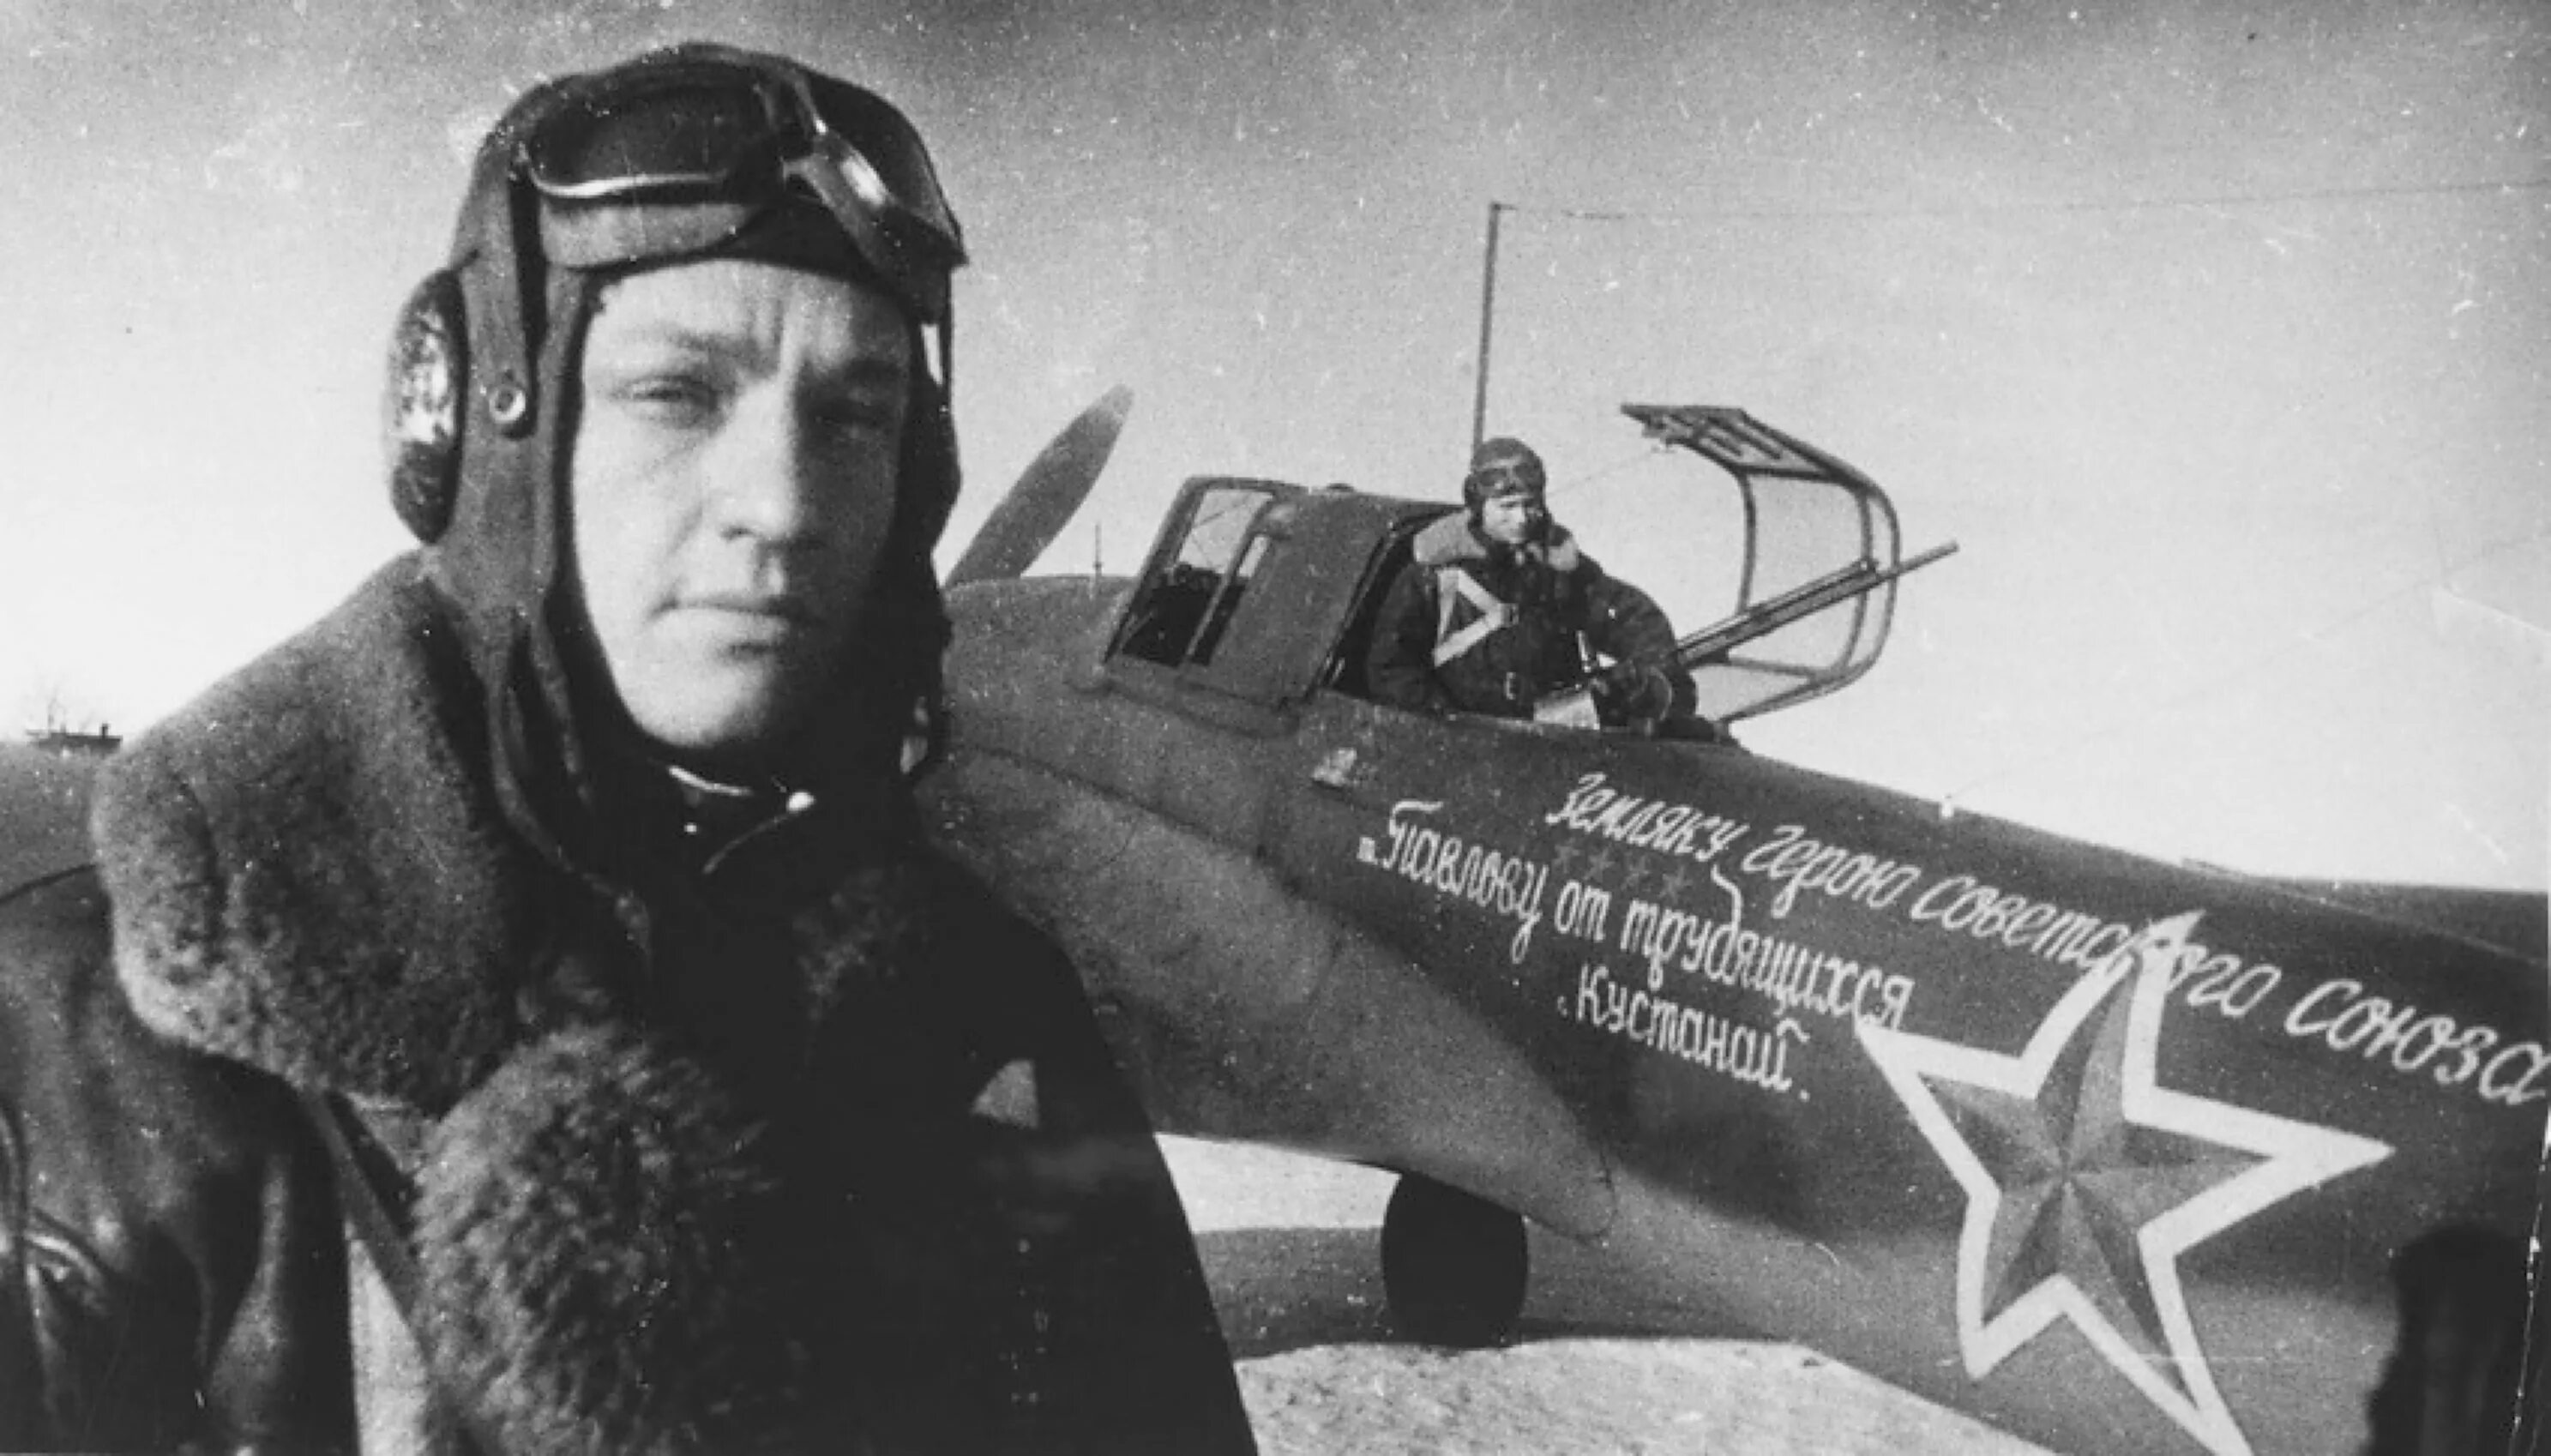 Многим летчикам великой отечественной войны. Лётчик Павлов герой советского Союза.